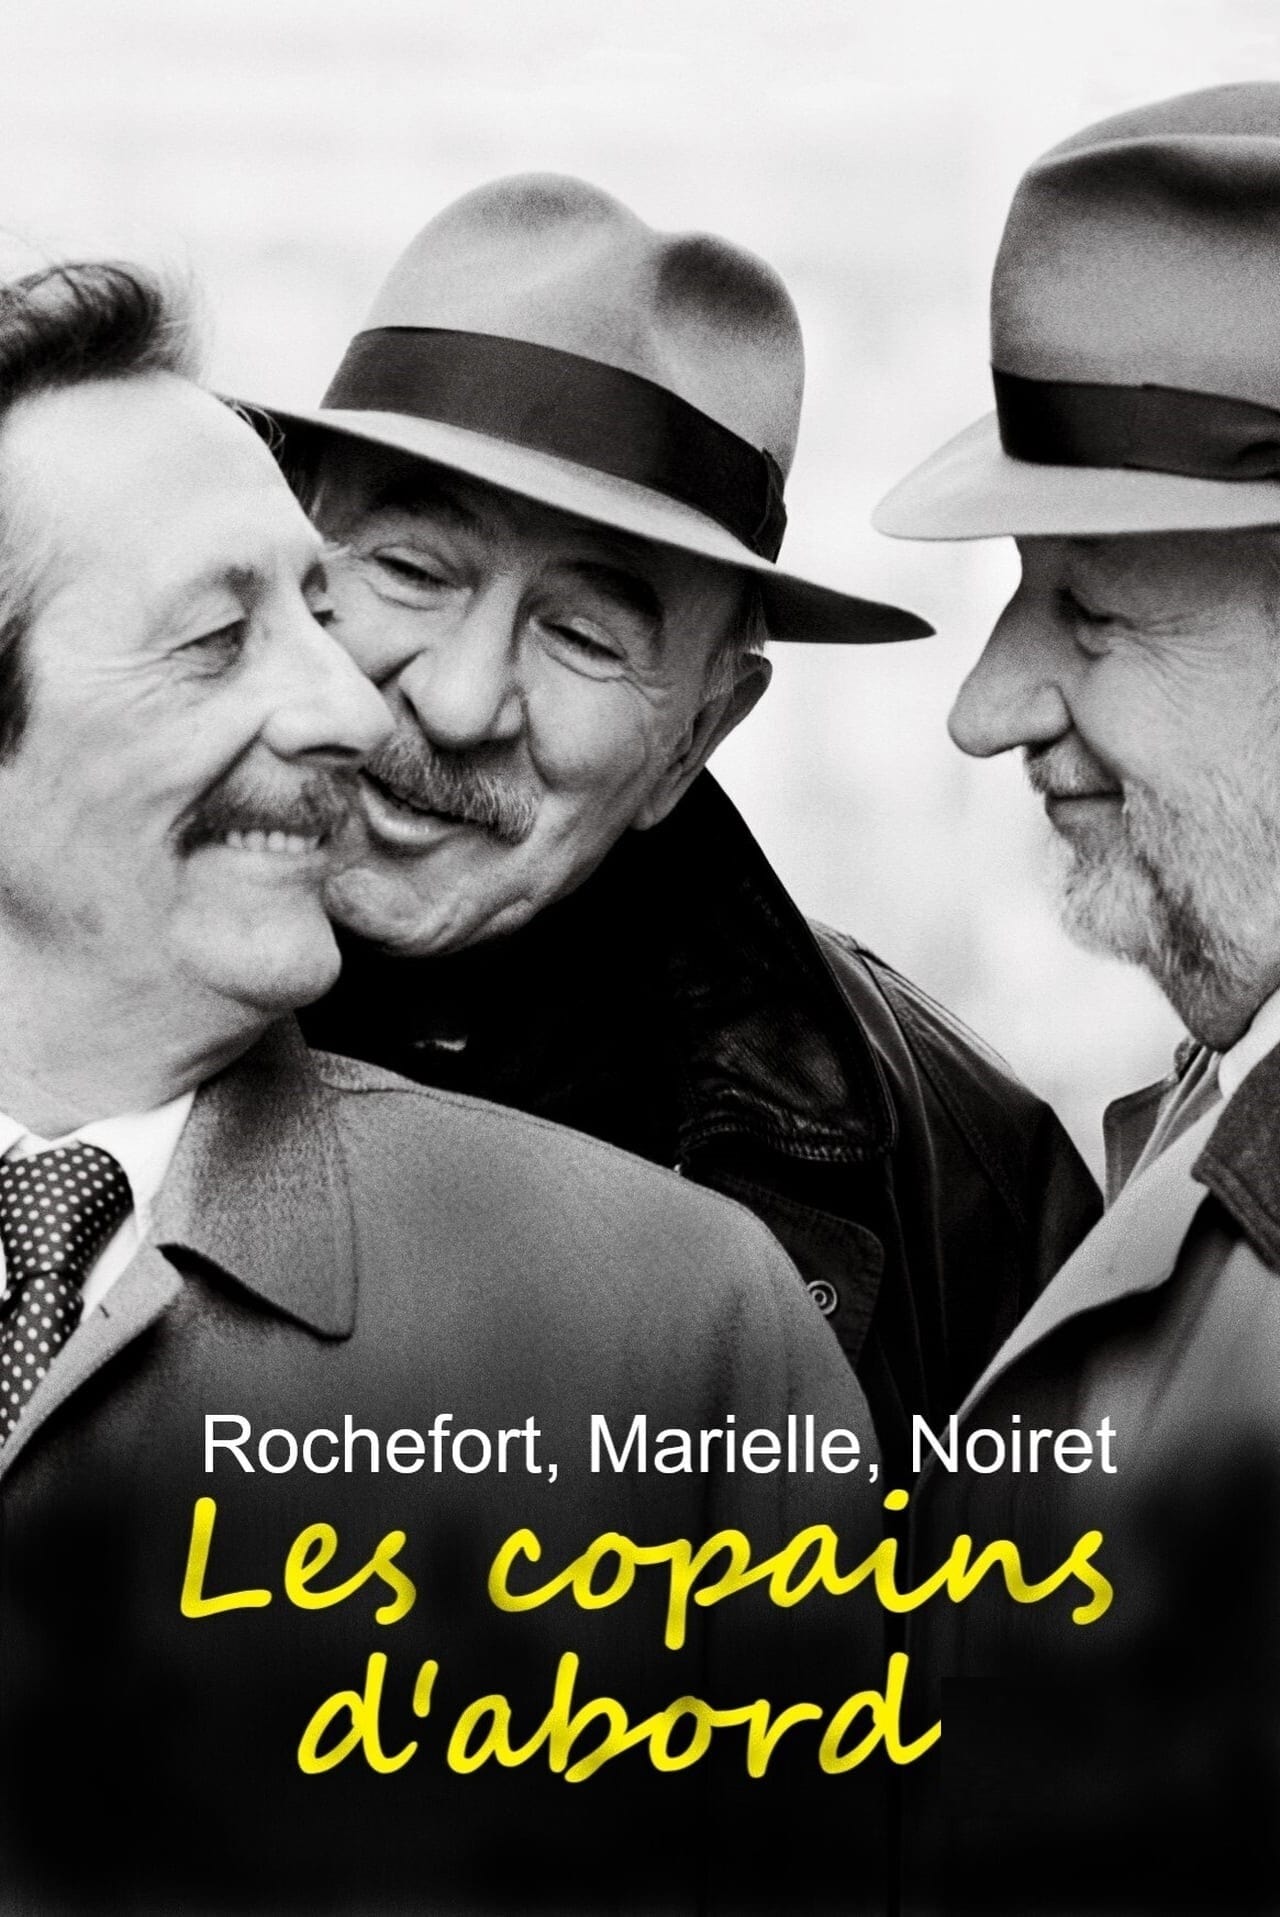 Rochefort, Marielle, Noiret: Les copains d'abord